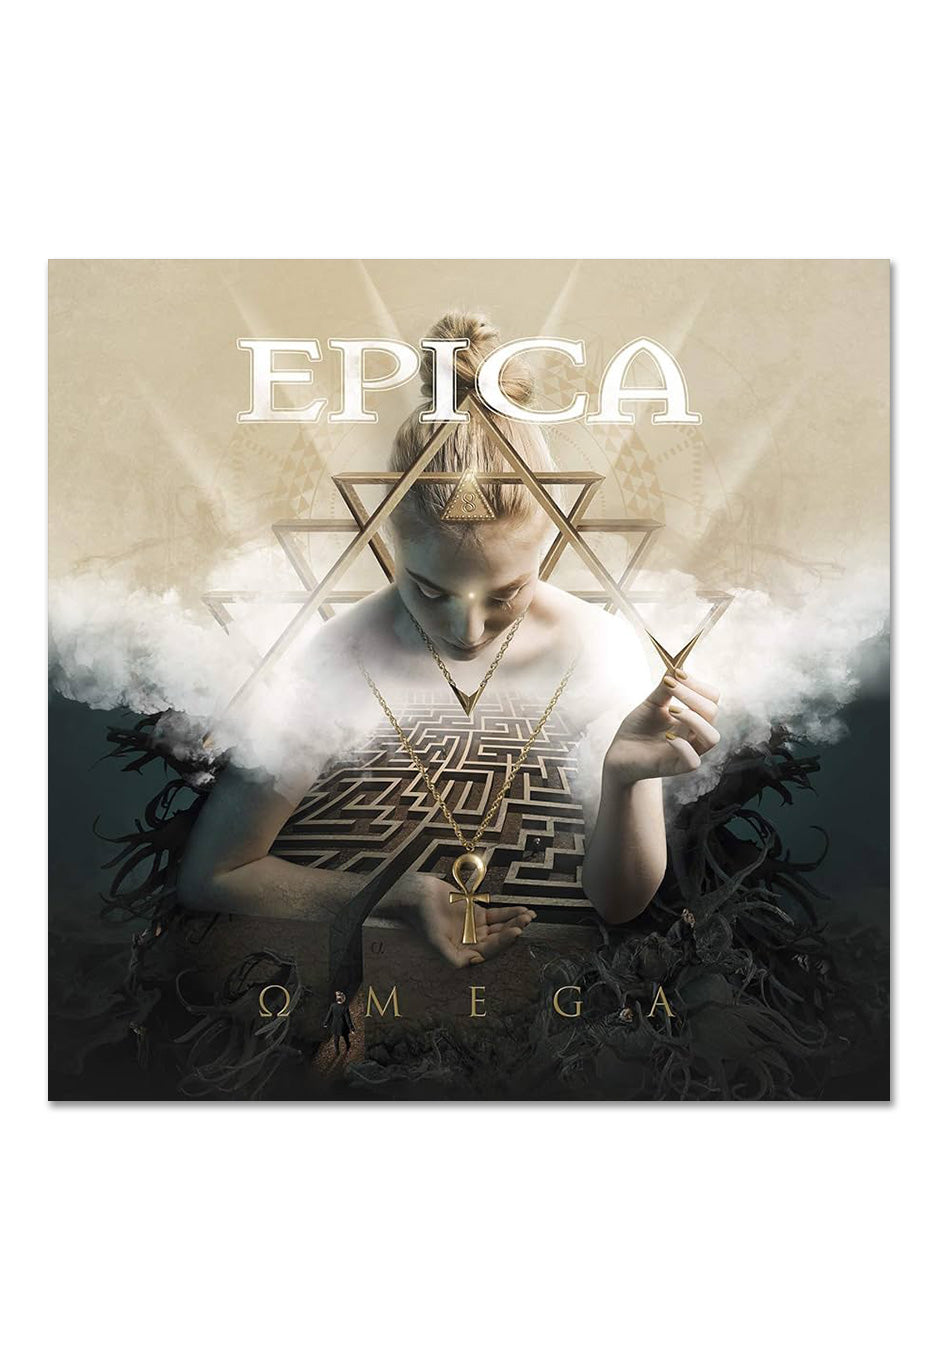 Epica - Omega Ltd. Purple - Colored 2 Vinyl